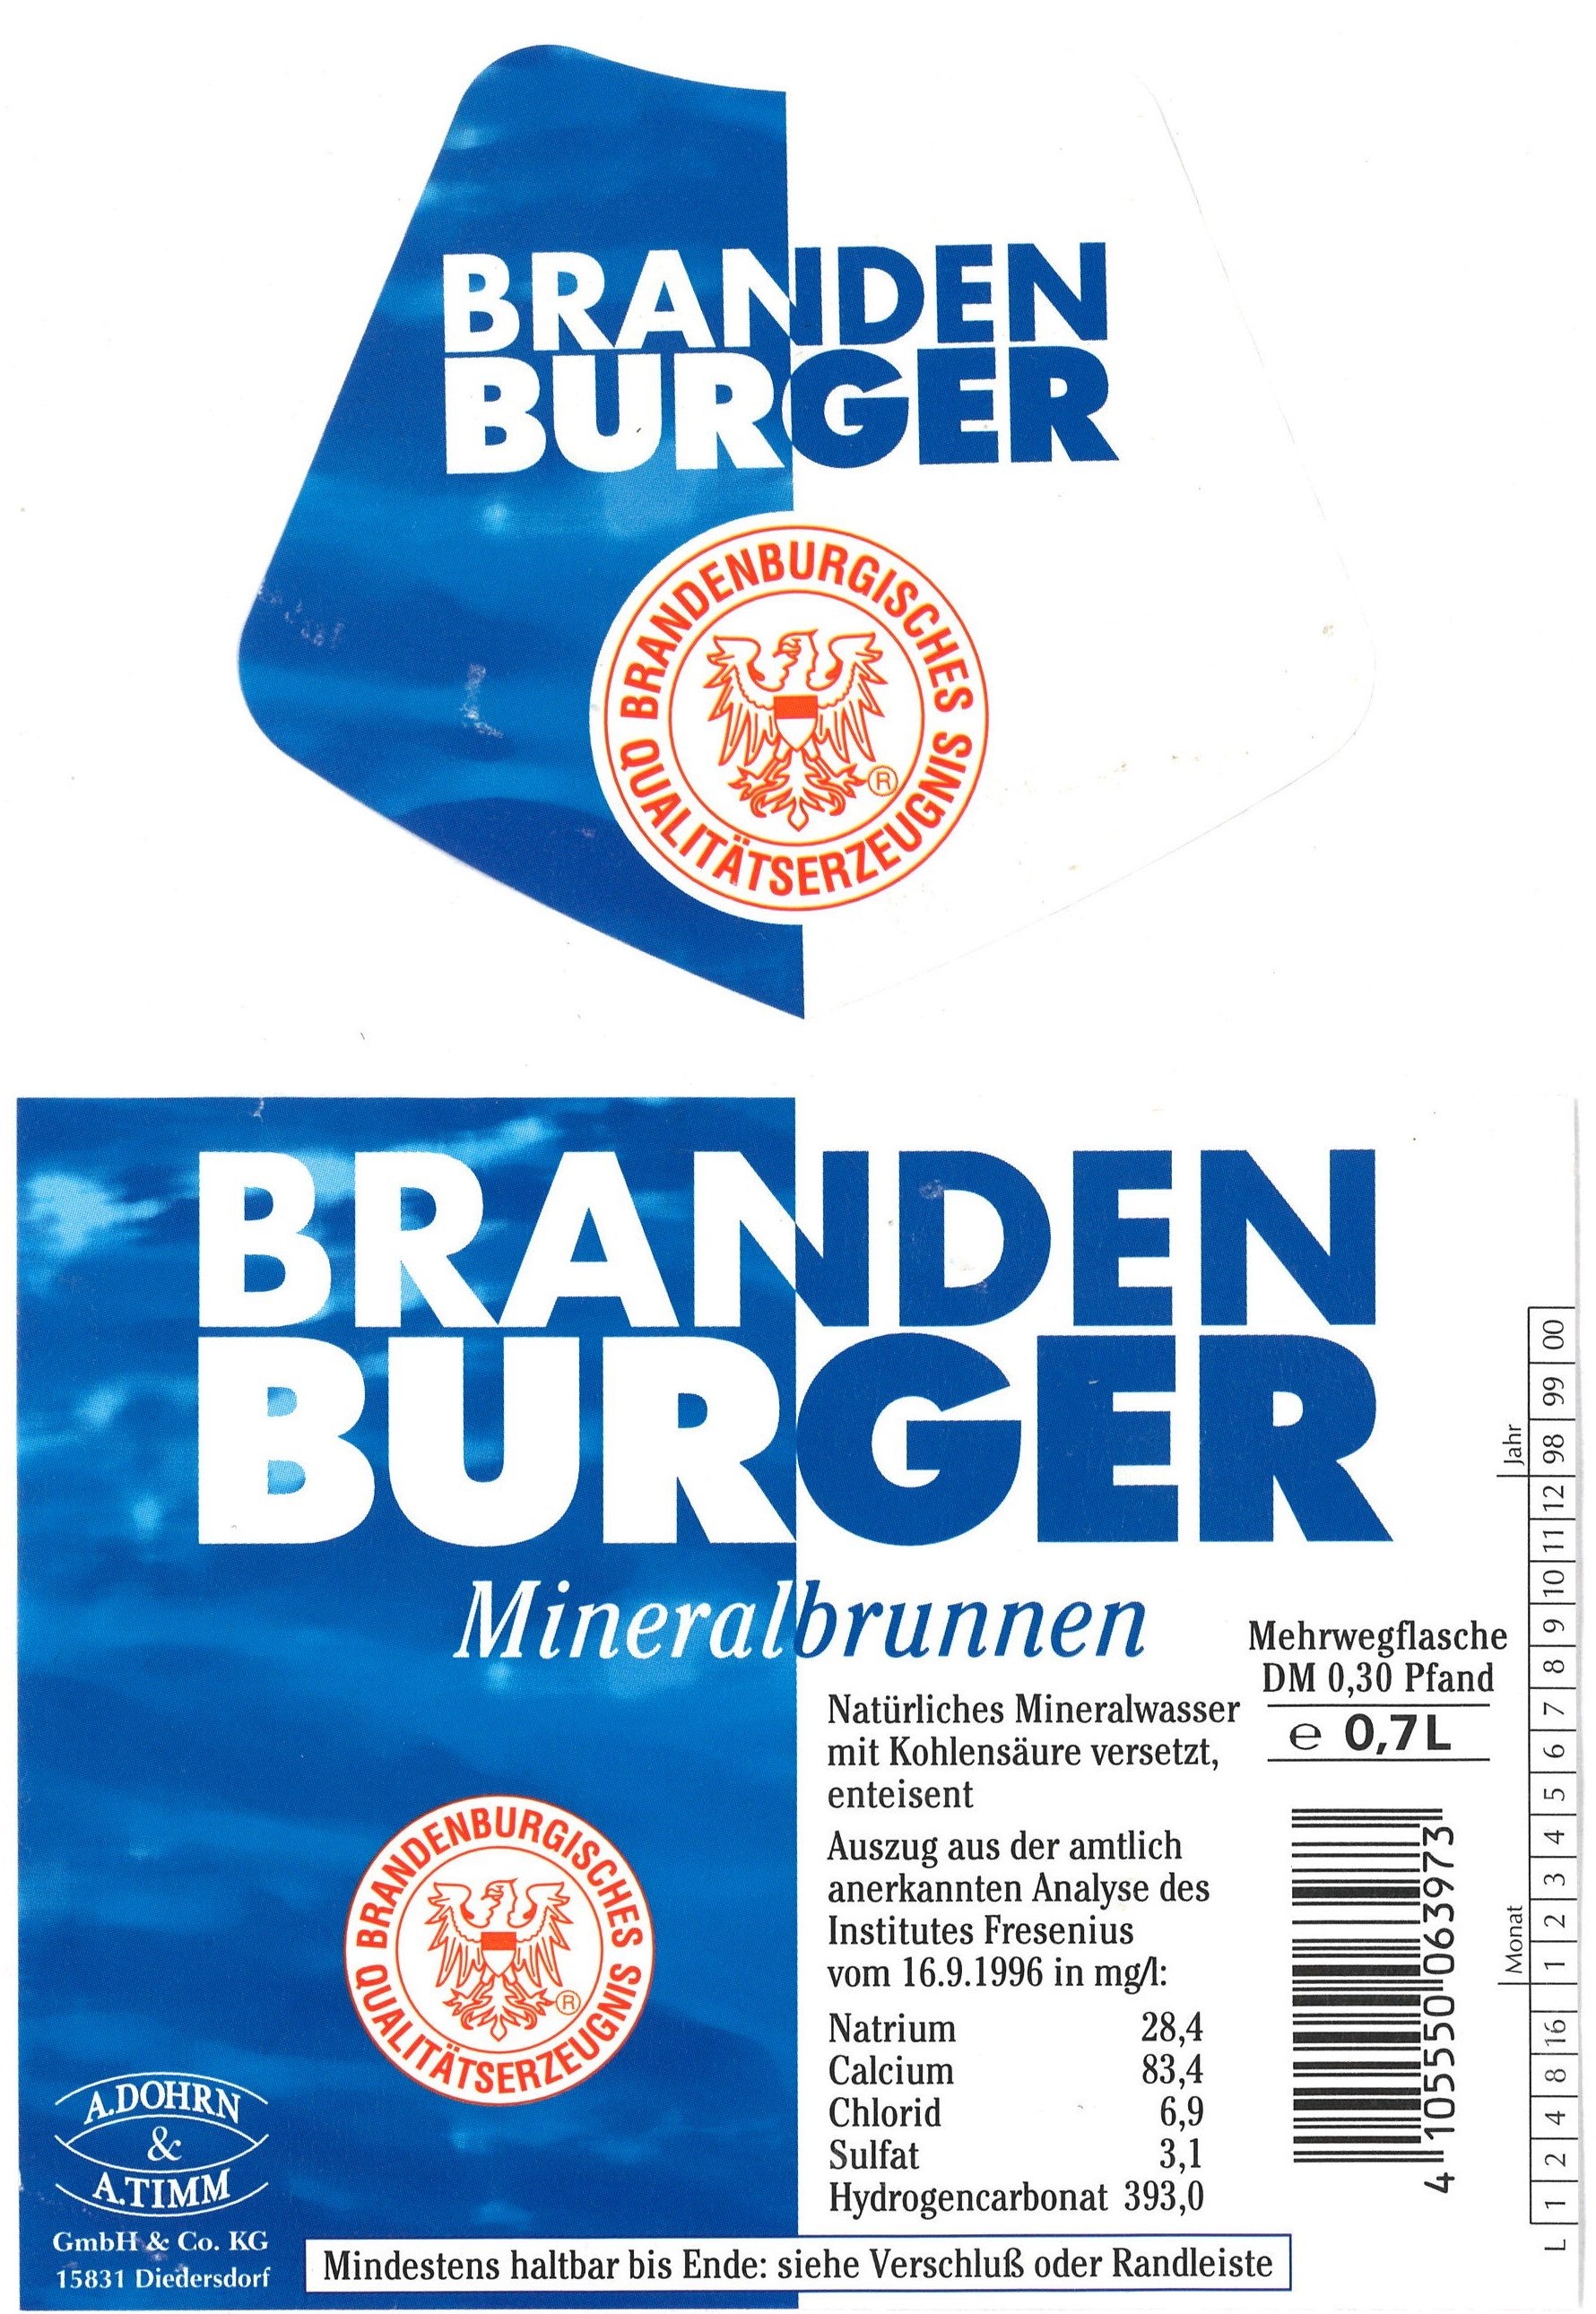 Diedersdorf, A. Dohrn & A. Timm: Mineralwasser "Brandenburger Mineralbrunnen" (Landesgeschichtliche Vereinigung für die Mark Brandenburg e.V., Archiv CC BY)